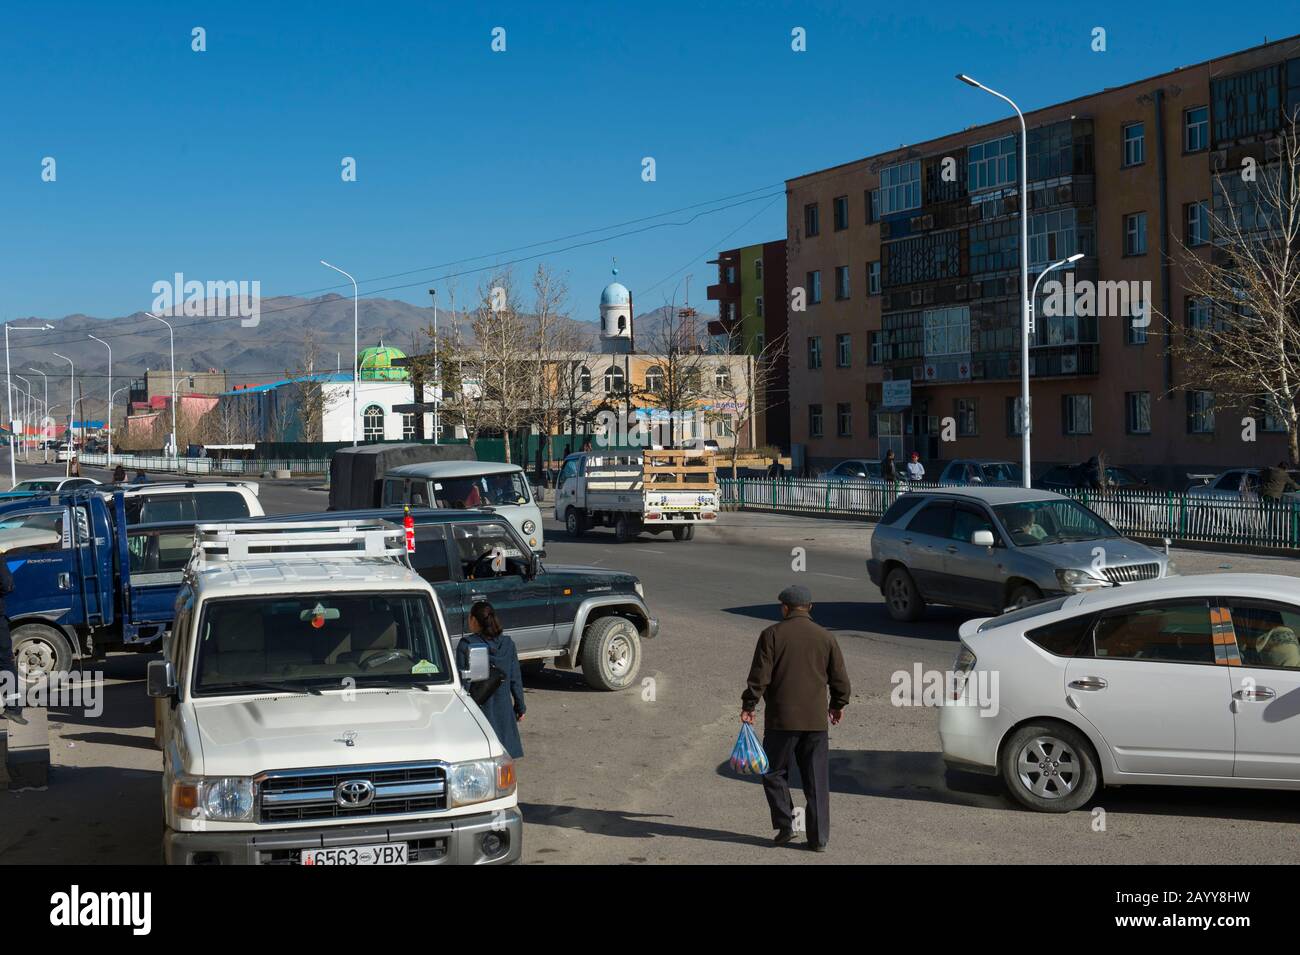 Scena di strada nel centro della città di Ulgii (Ölgii) nella provincia di Bayan-Ulgii nella Mongolia occidentale. Foto Stock